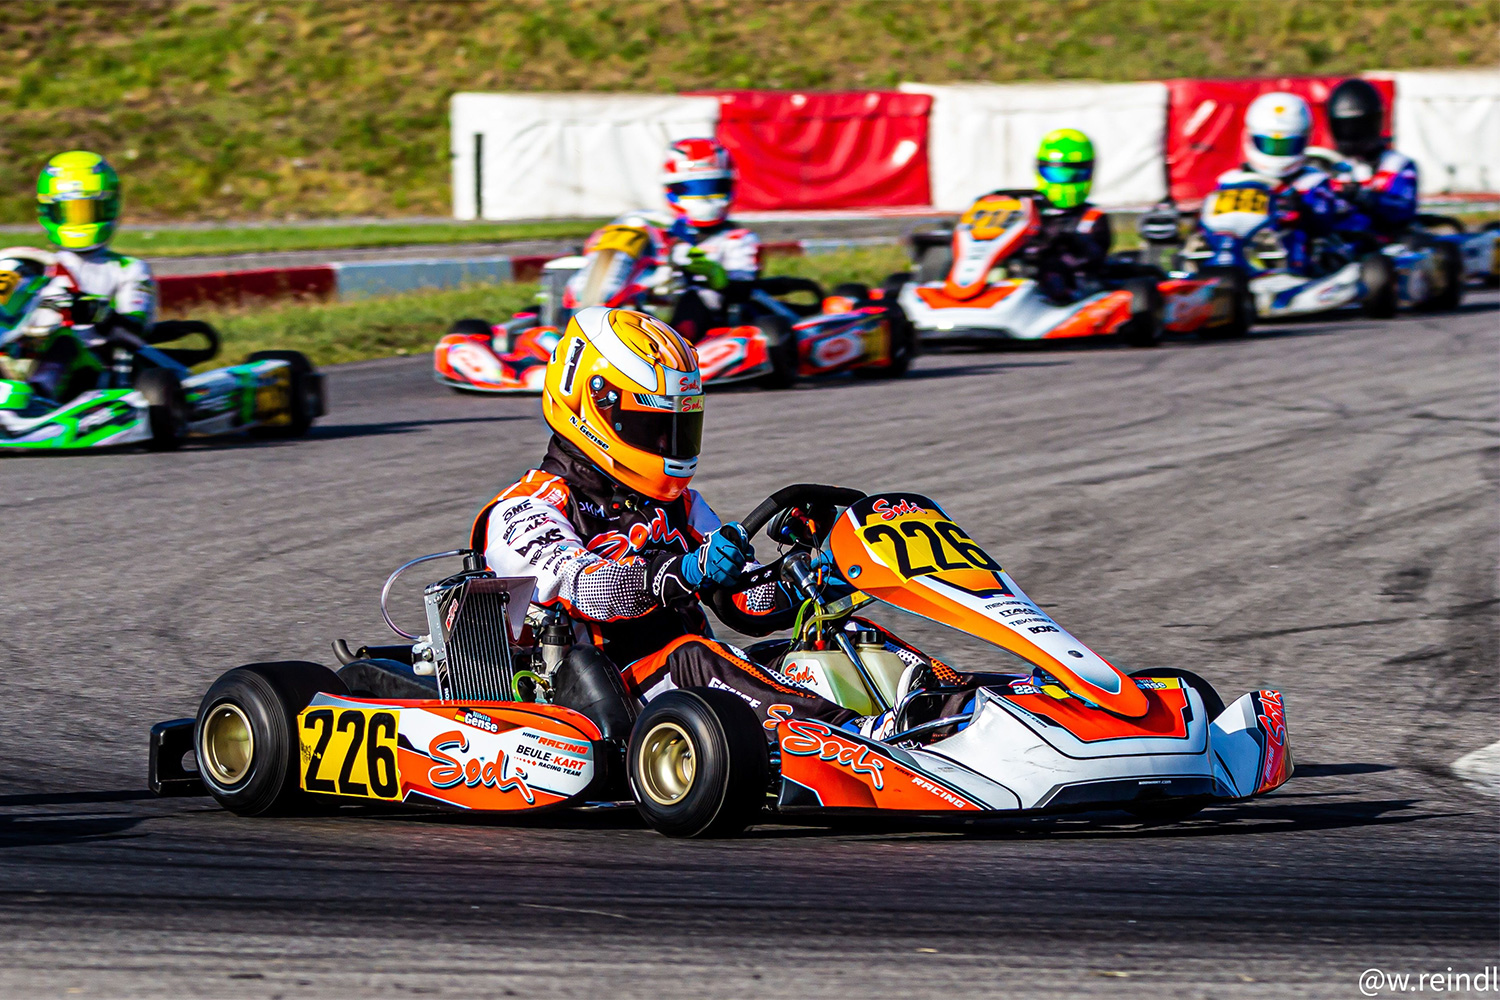 RMC-Sieg und Pokale für Beule Kart Racing